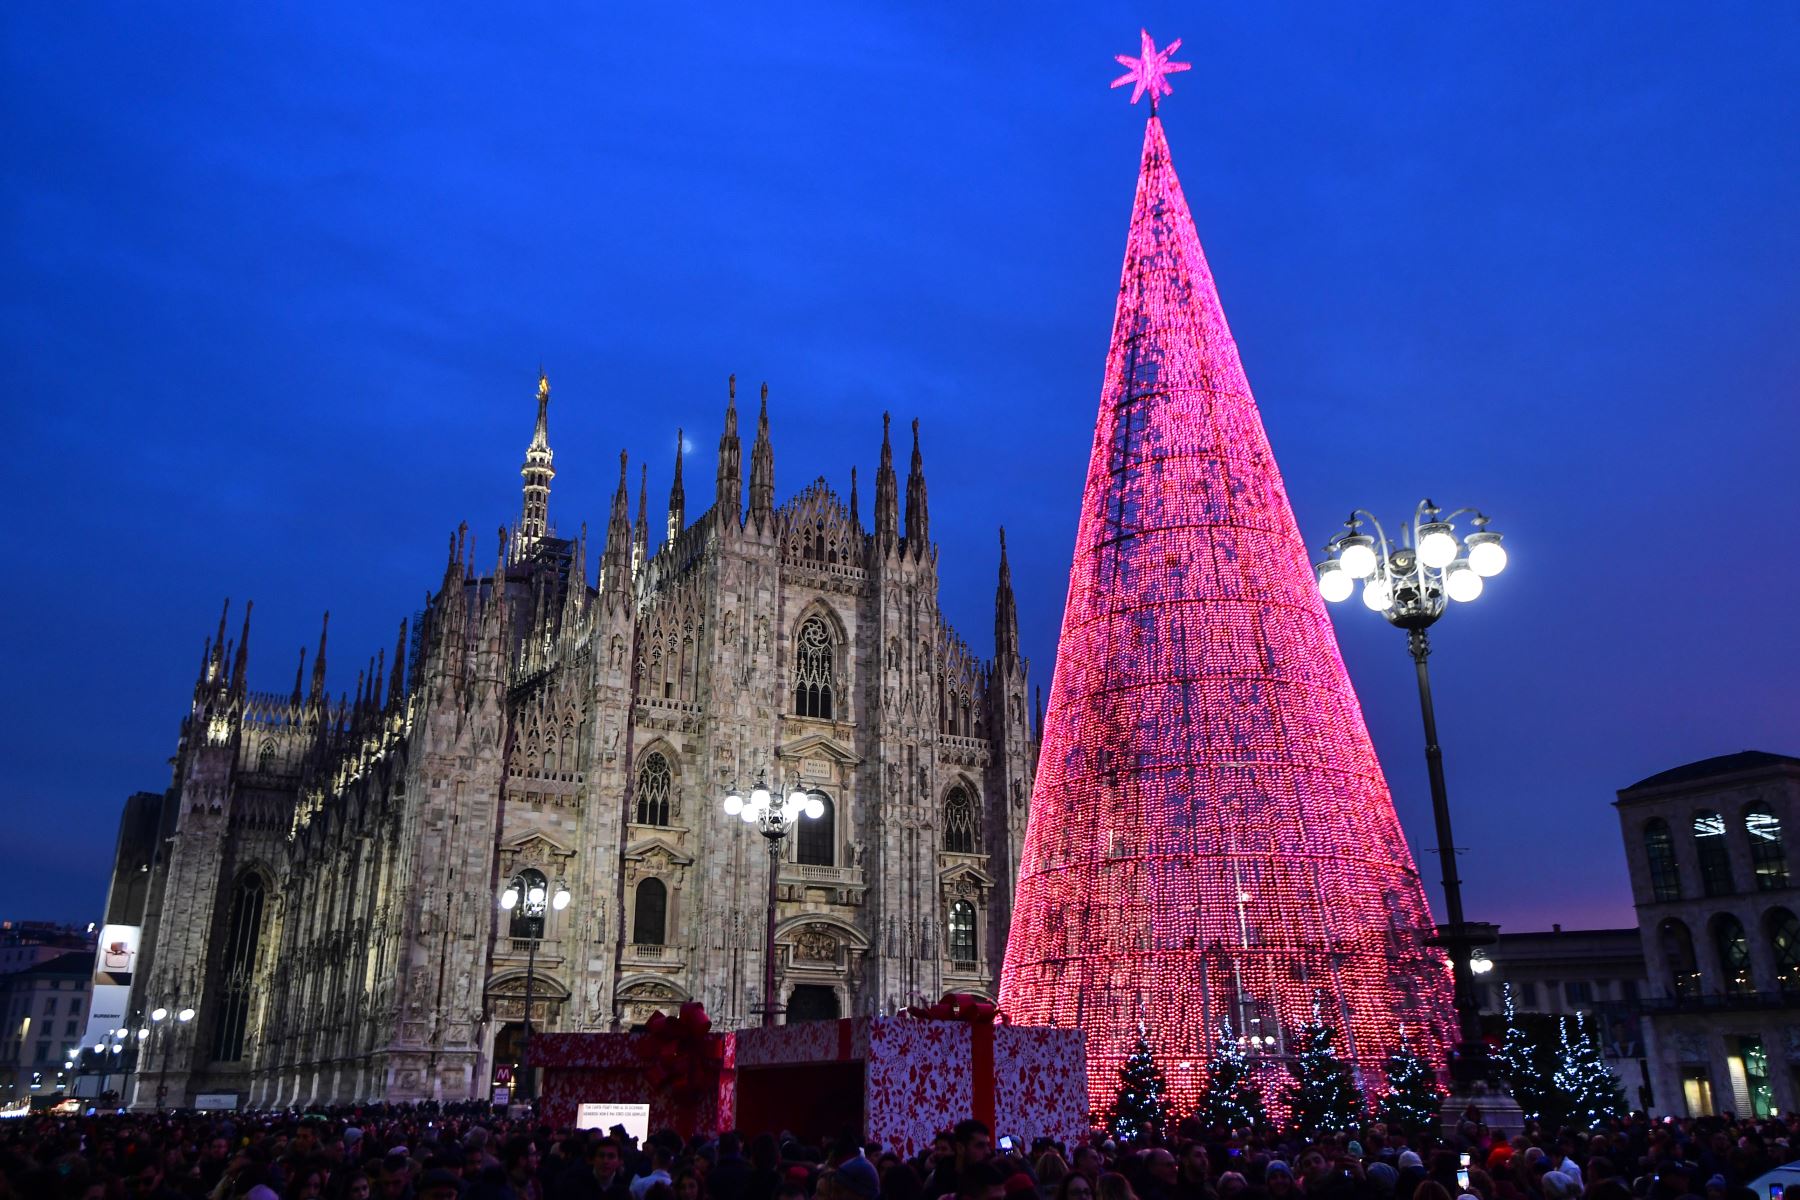 Las personas se reúnen junto a un árbol de Navidad gigante y ligero en la Plazza del Duomo de Milán-Italia.
Foto: AFP